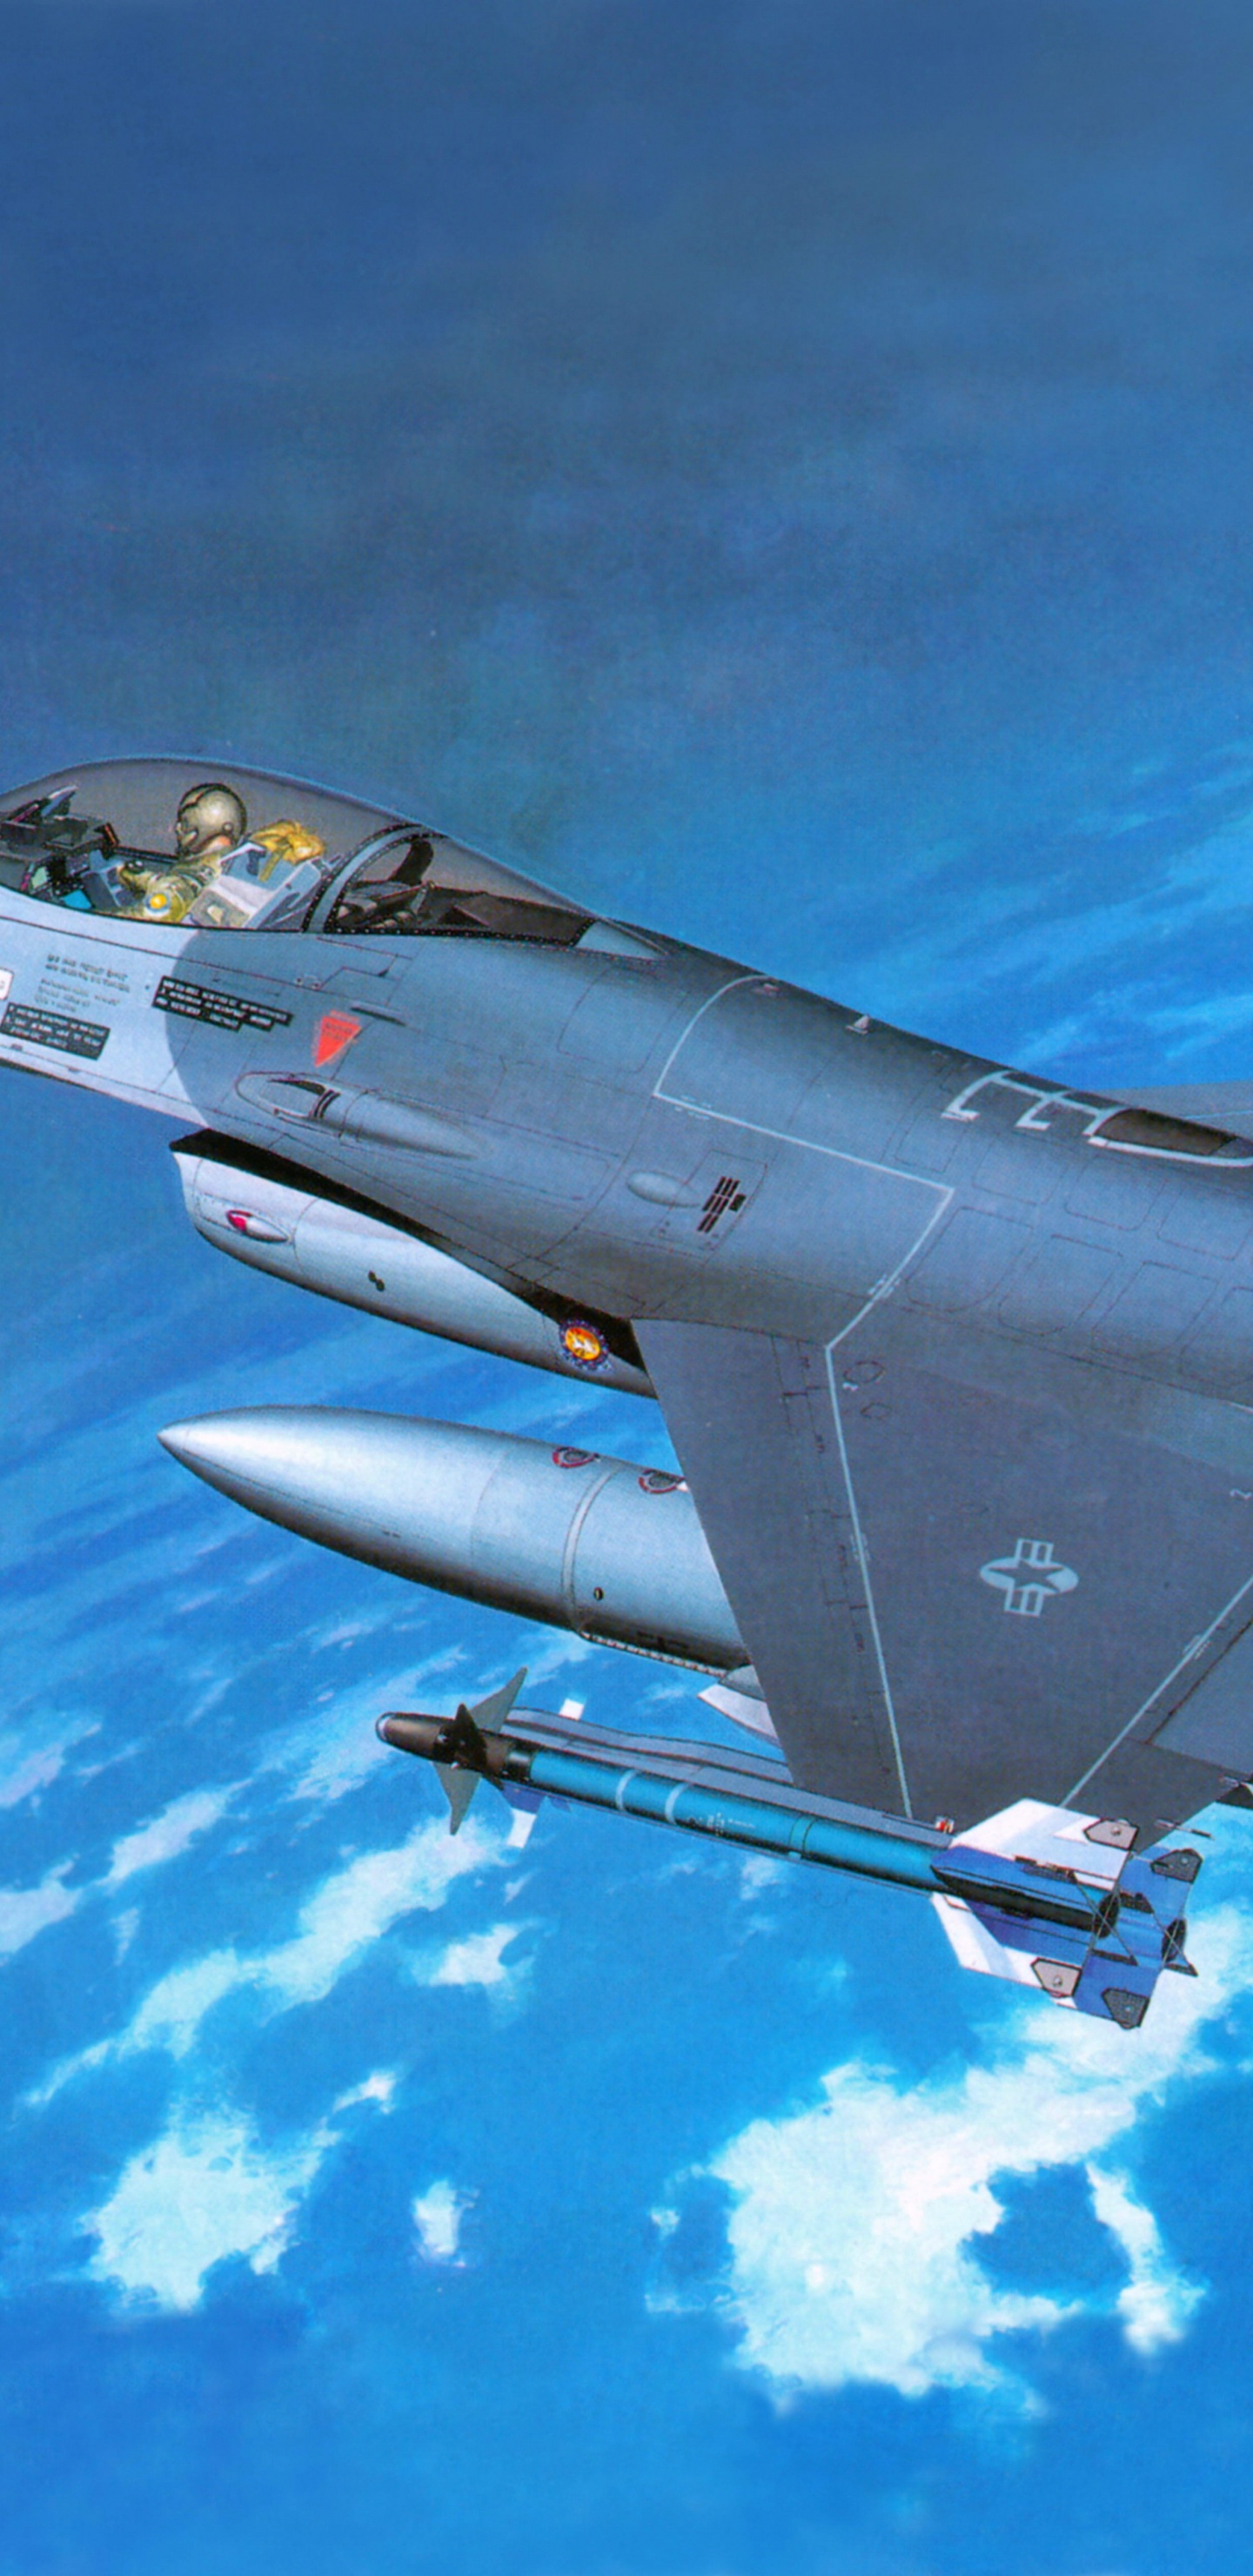 长谷川公司, 塑料模型, 军用飞机, 航空, 空军 壁纸 1440x2960 允许